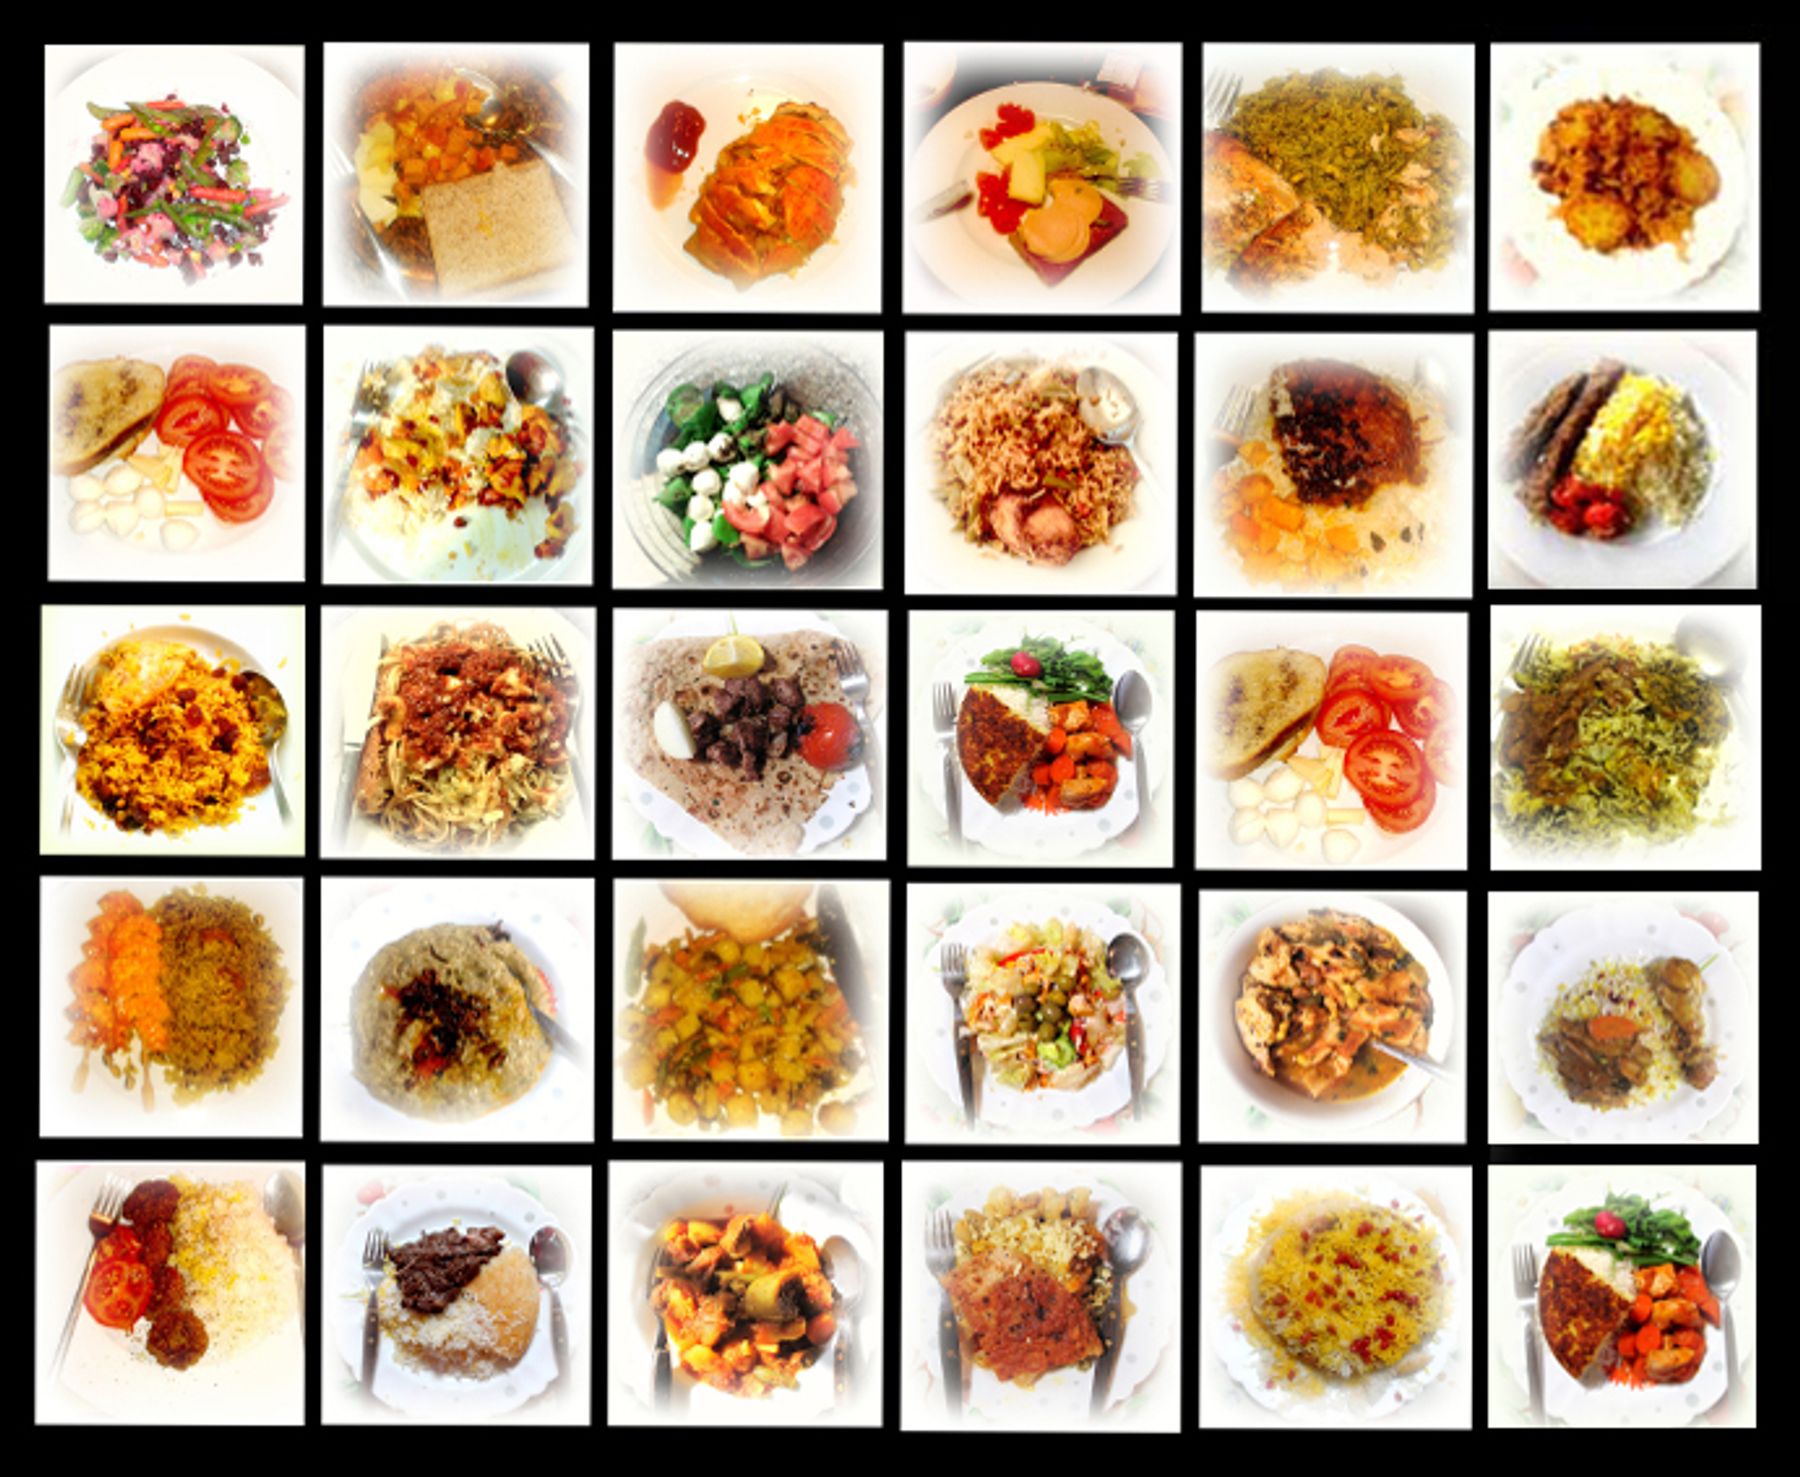 عمل فني مصور يتمحور حول أطعمة شرقية متنوعة